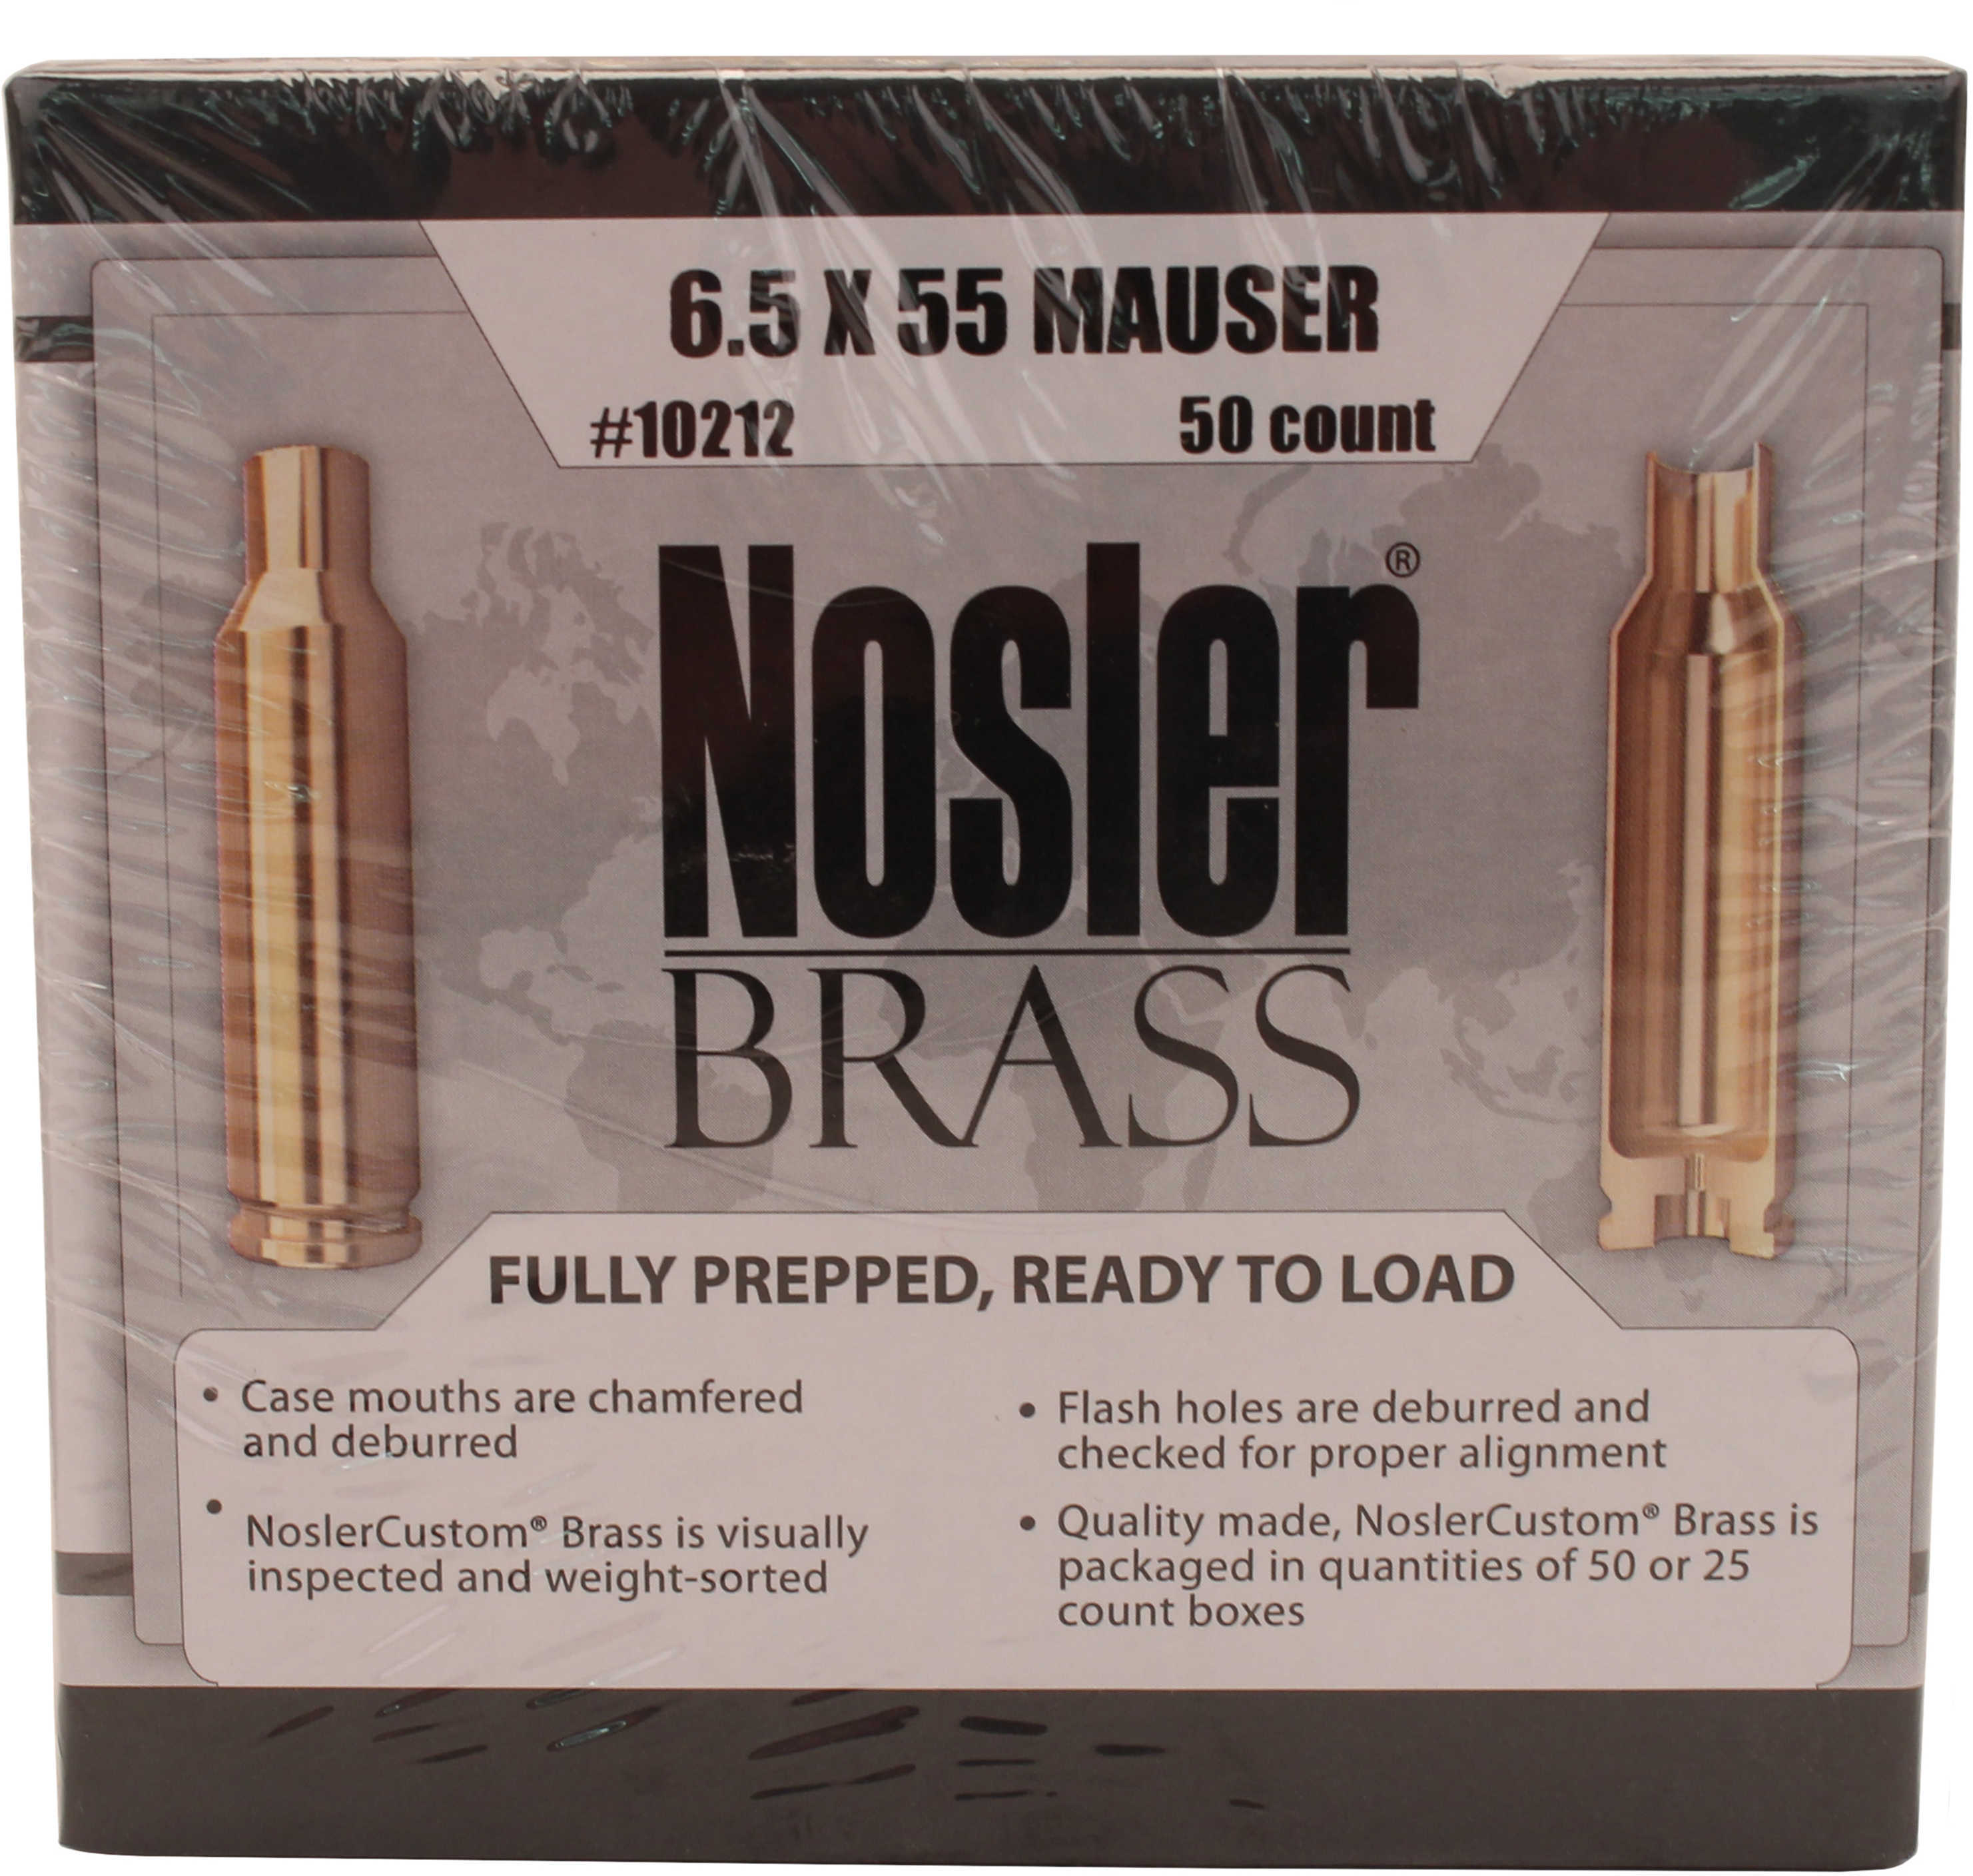 Nosler Brass 6.5x55 Mauser (Per 50) 10212